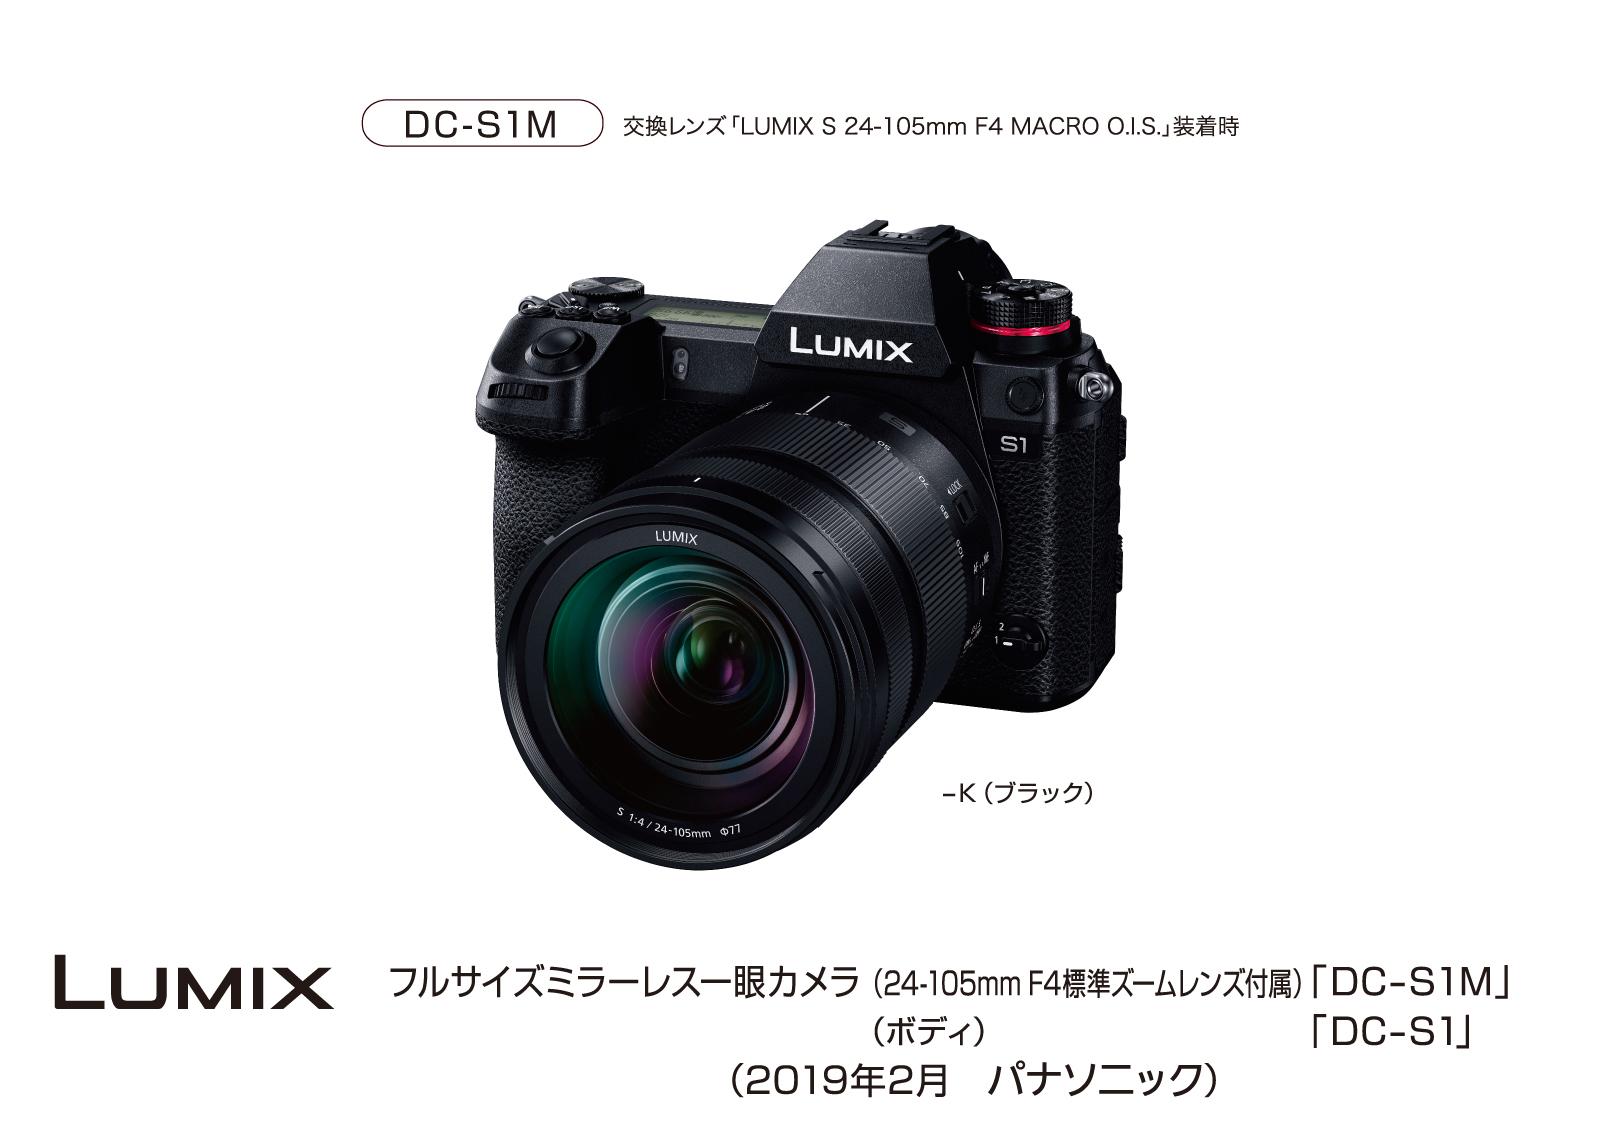 フルサイズミラーレスデジタル一眼カメラ「LUMIX」DC-S1